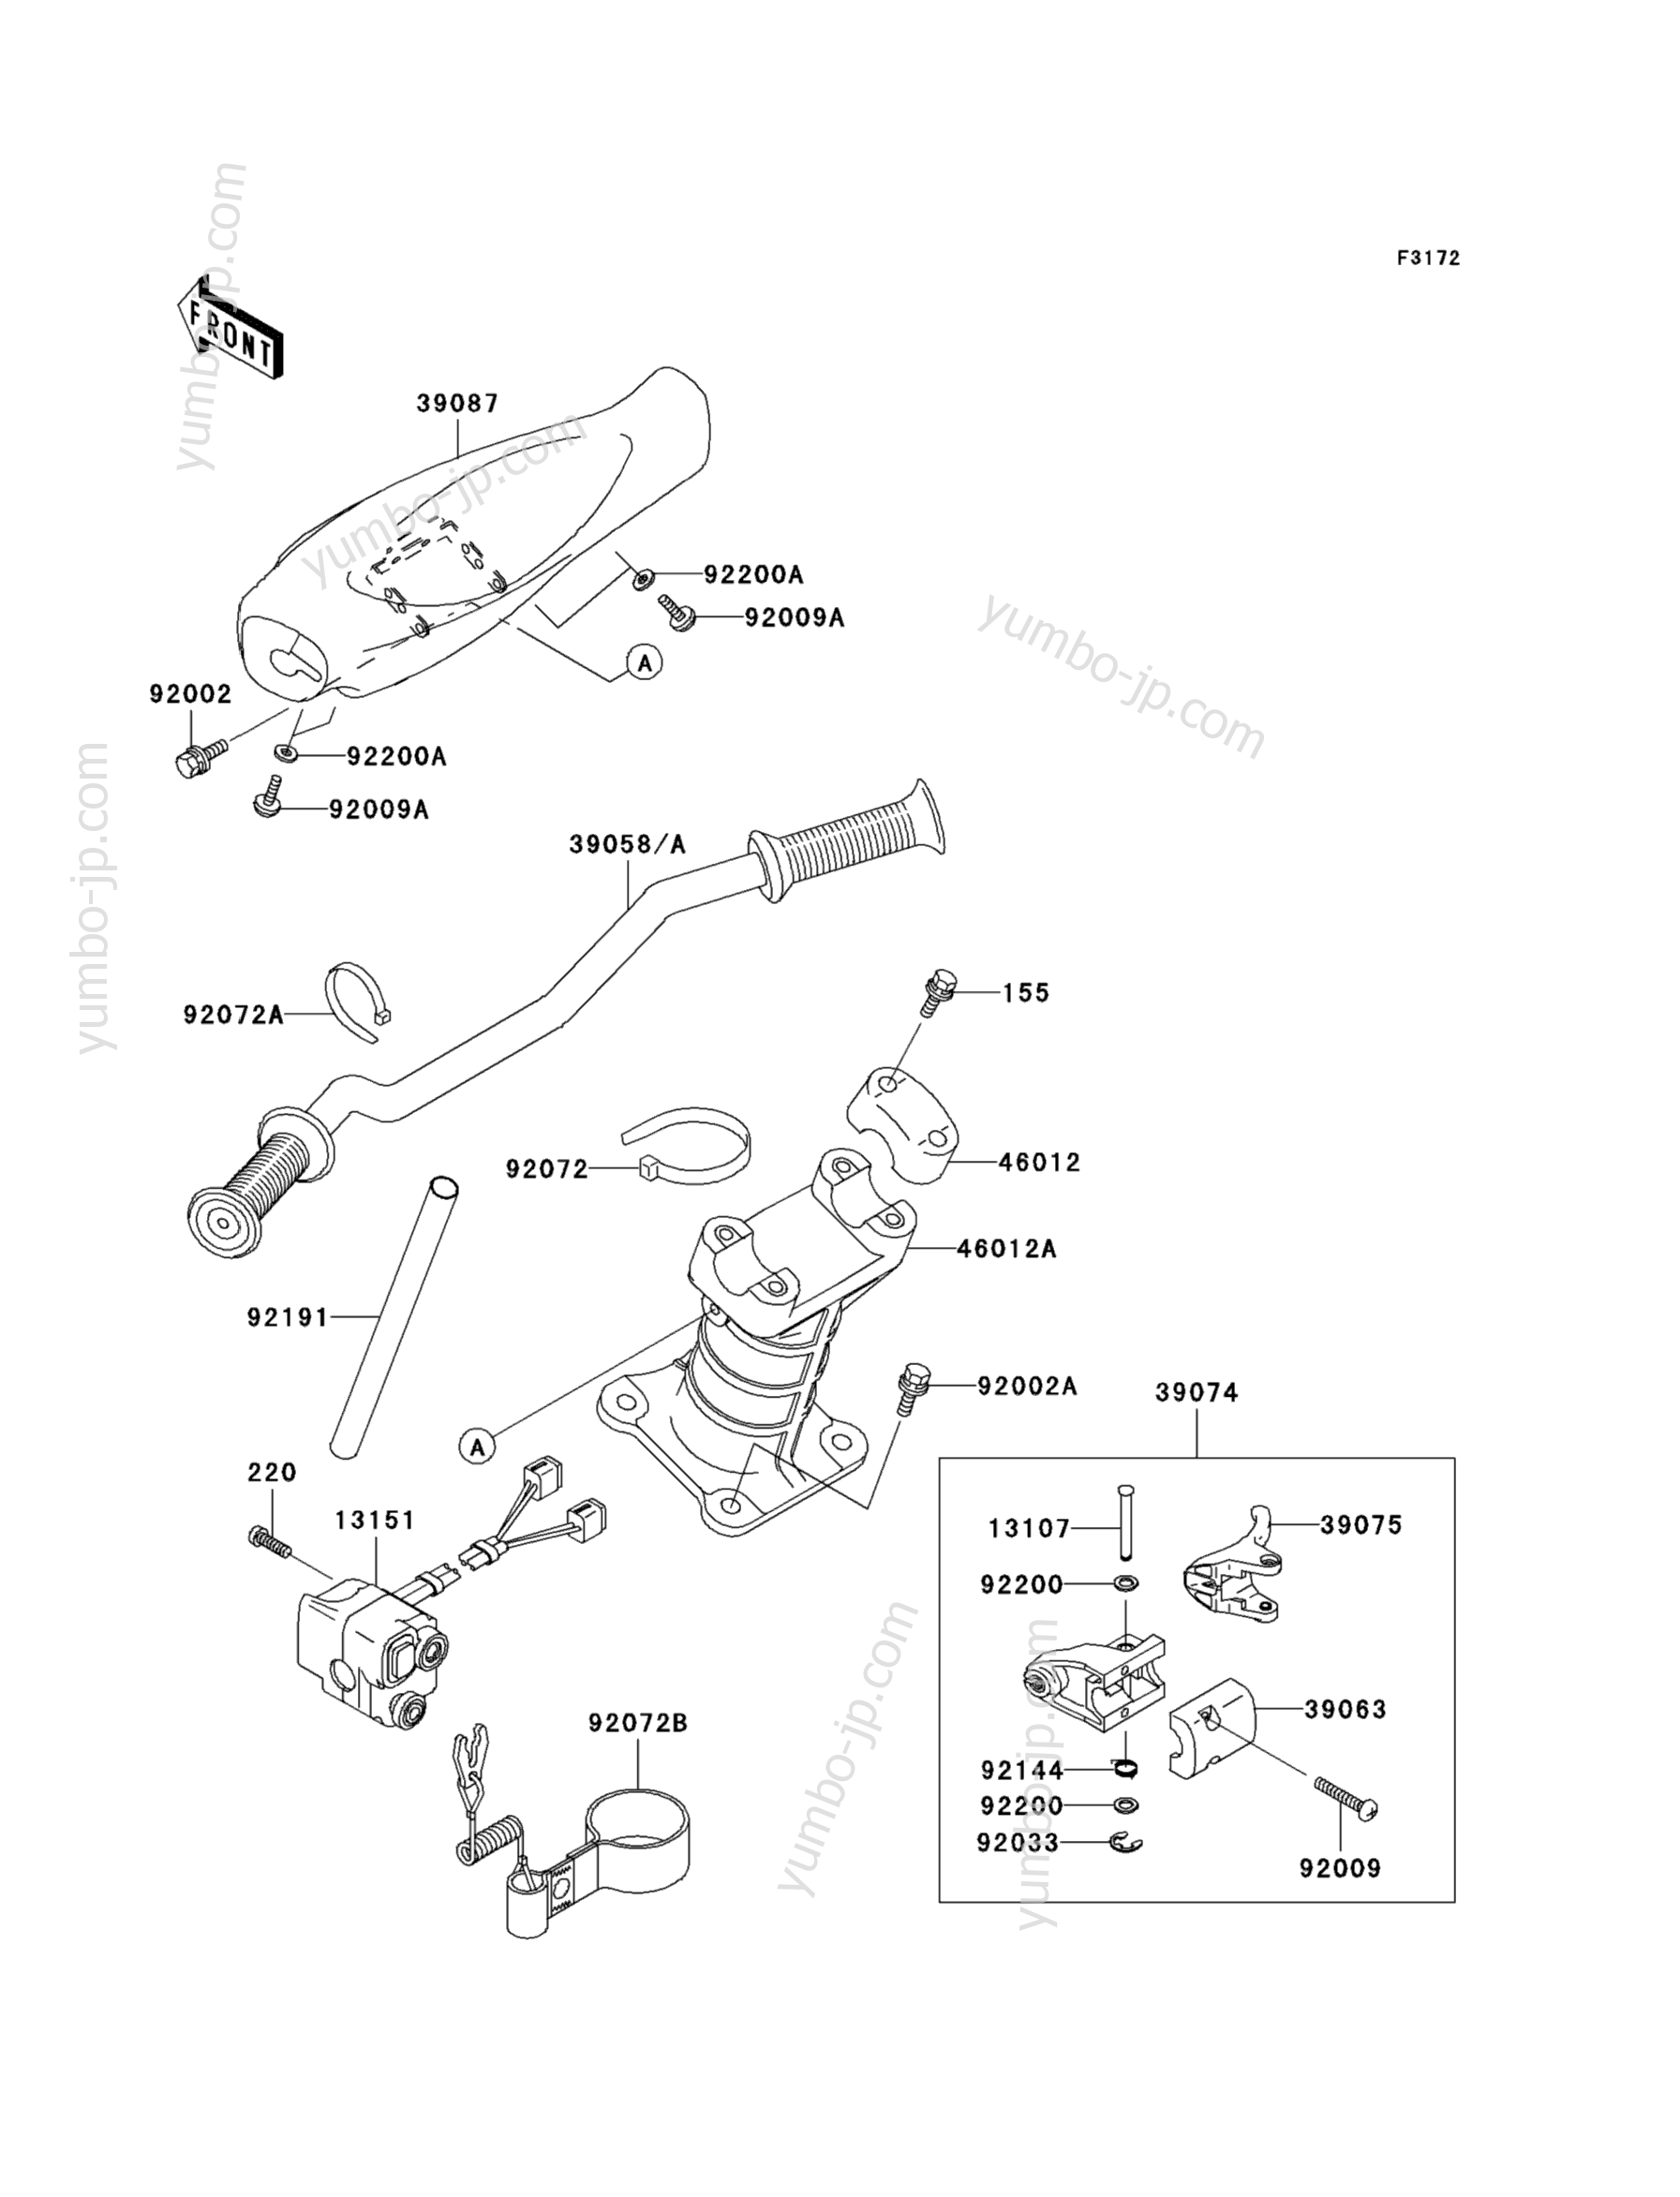 Румпель (рукоятка управления) для гидроциклов KAWASAKI JET SKI 1100 ZXI (JH1100-A8) 2003 г.